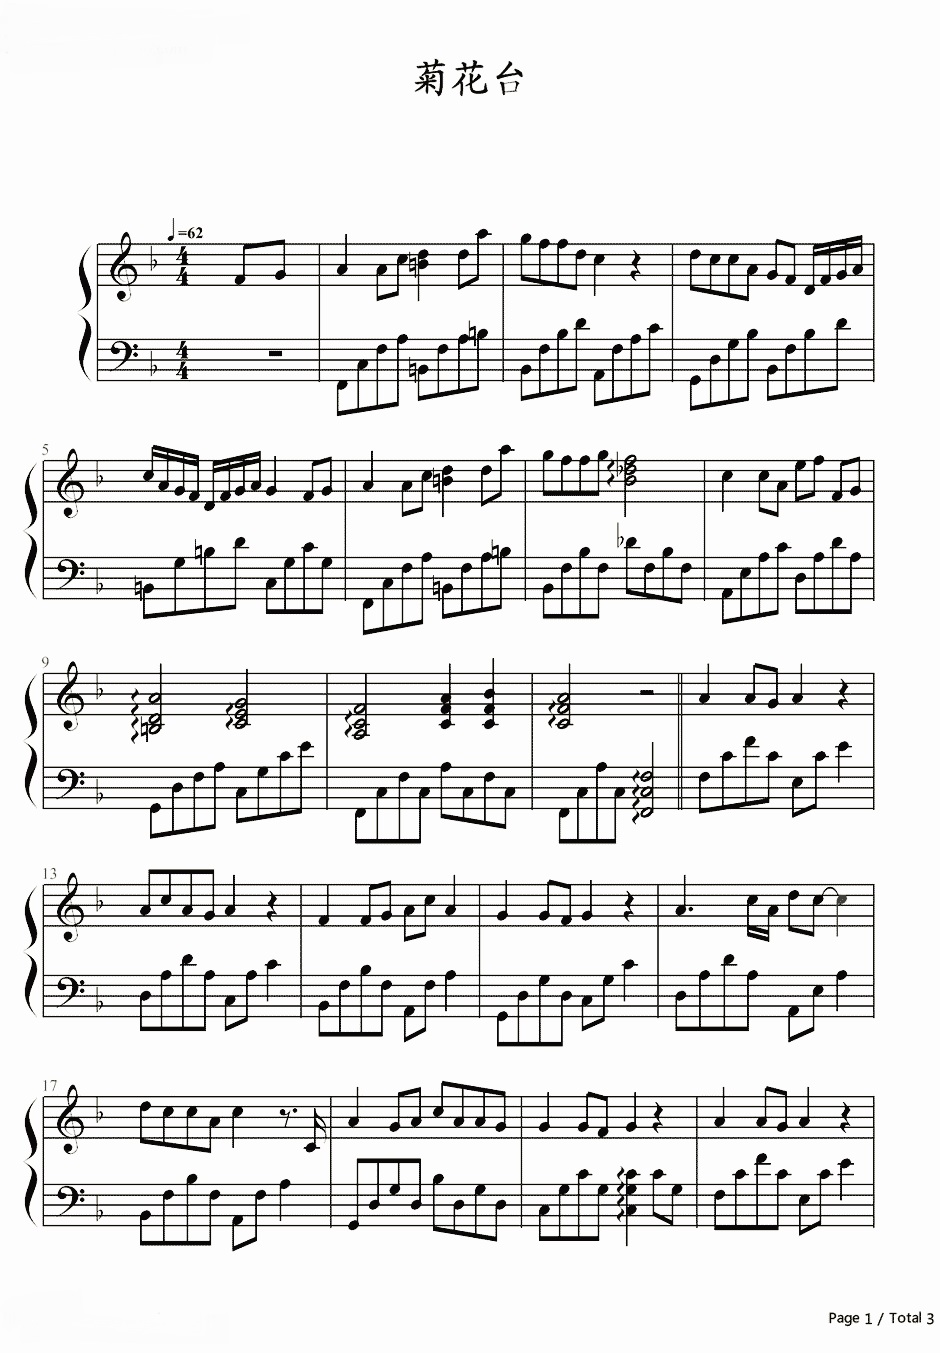 《菊花台》的钢琴谱钢琴曲谱 - 周杰伦